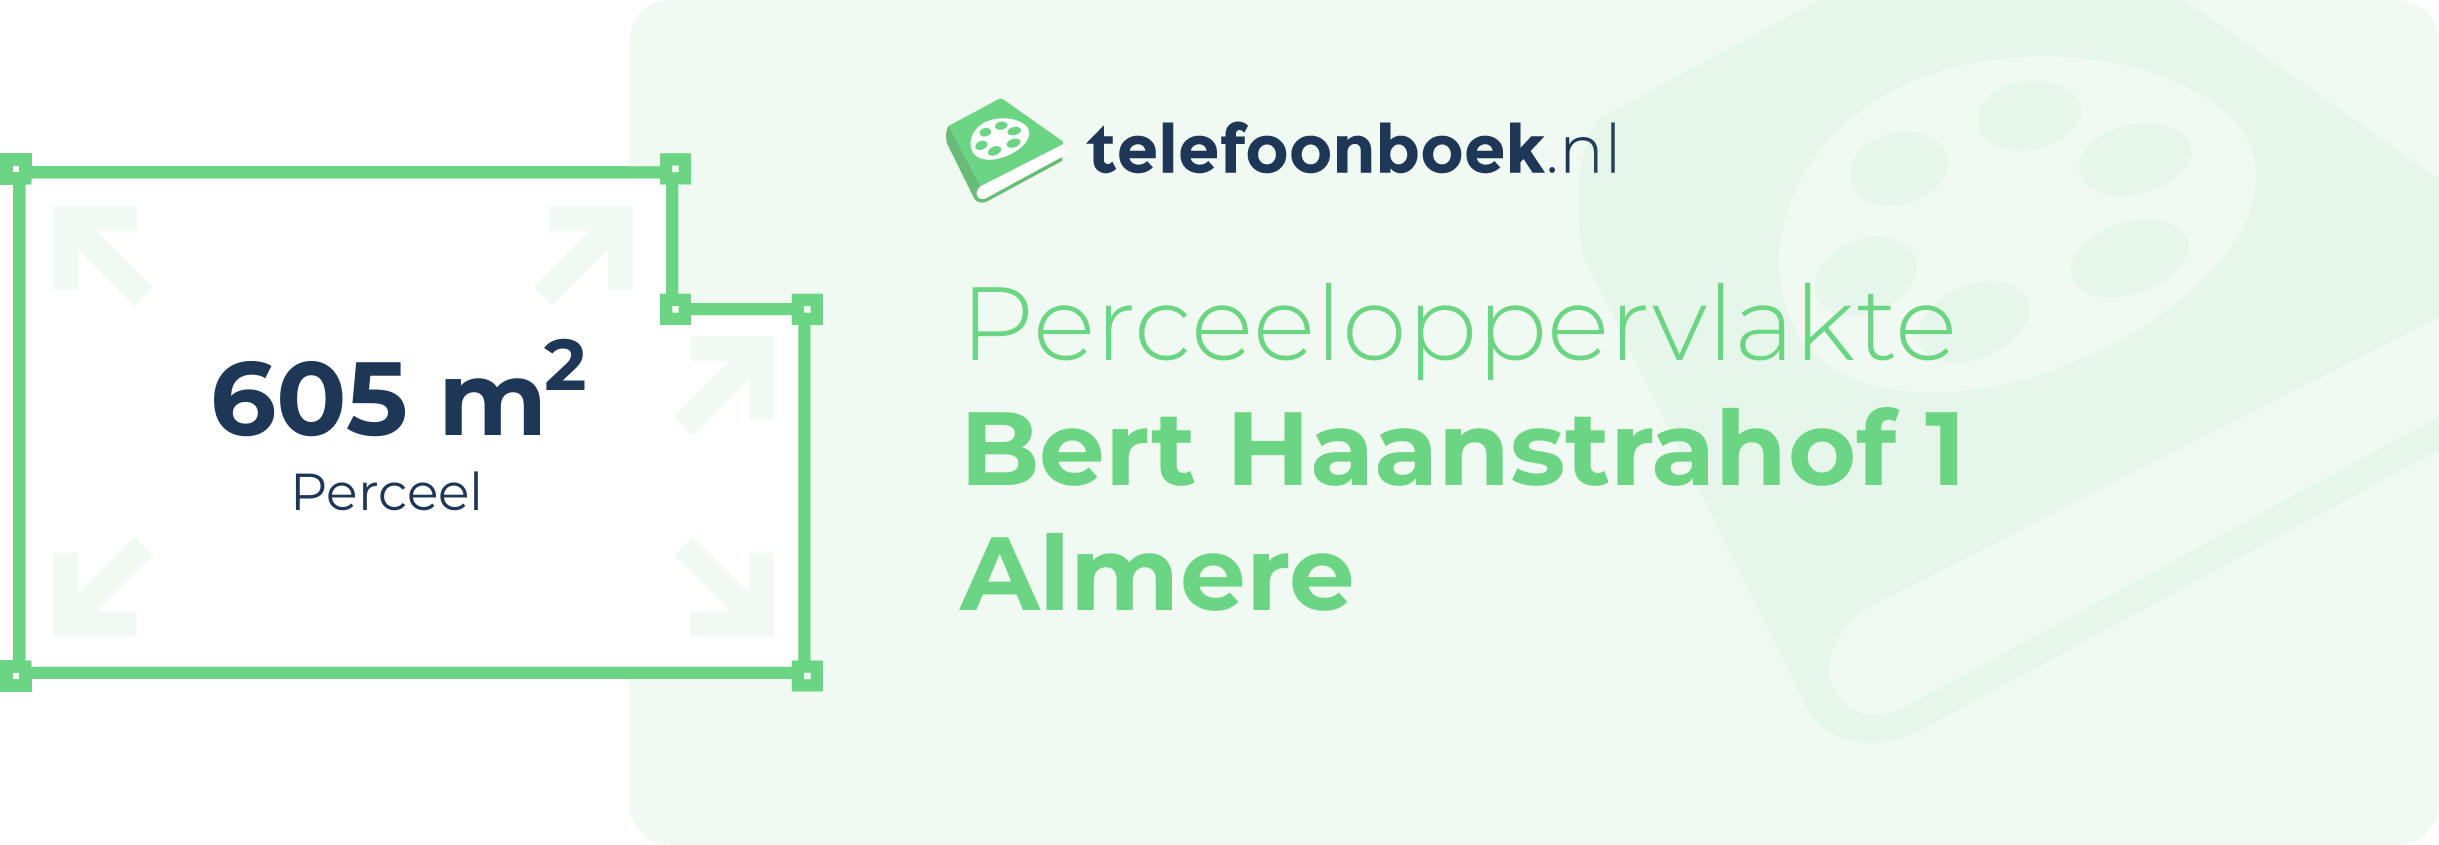 Perceeloppervlakte Bert Haanstrahof 1 Almere